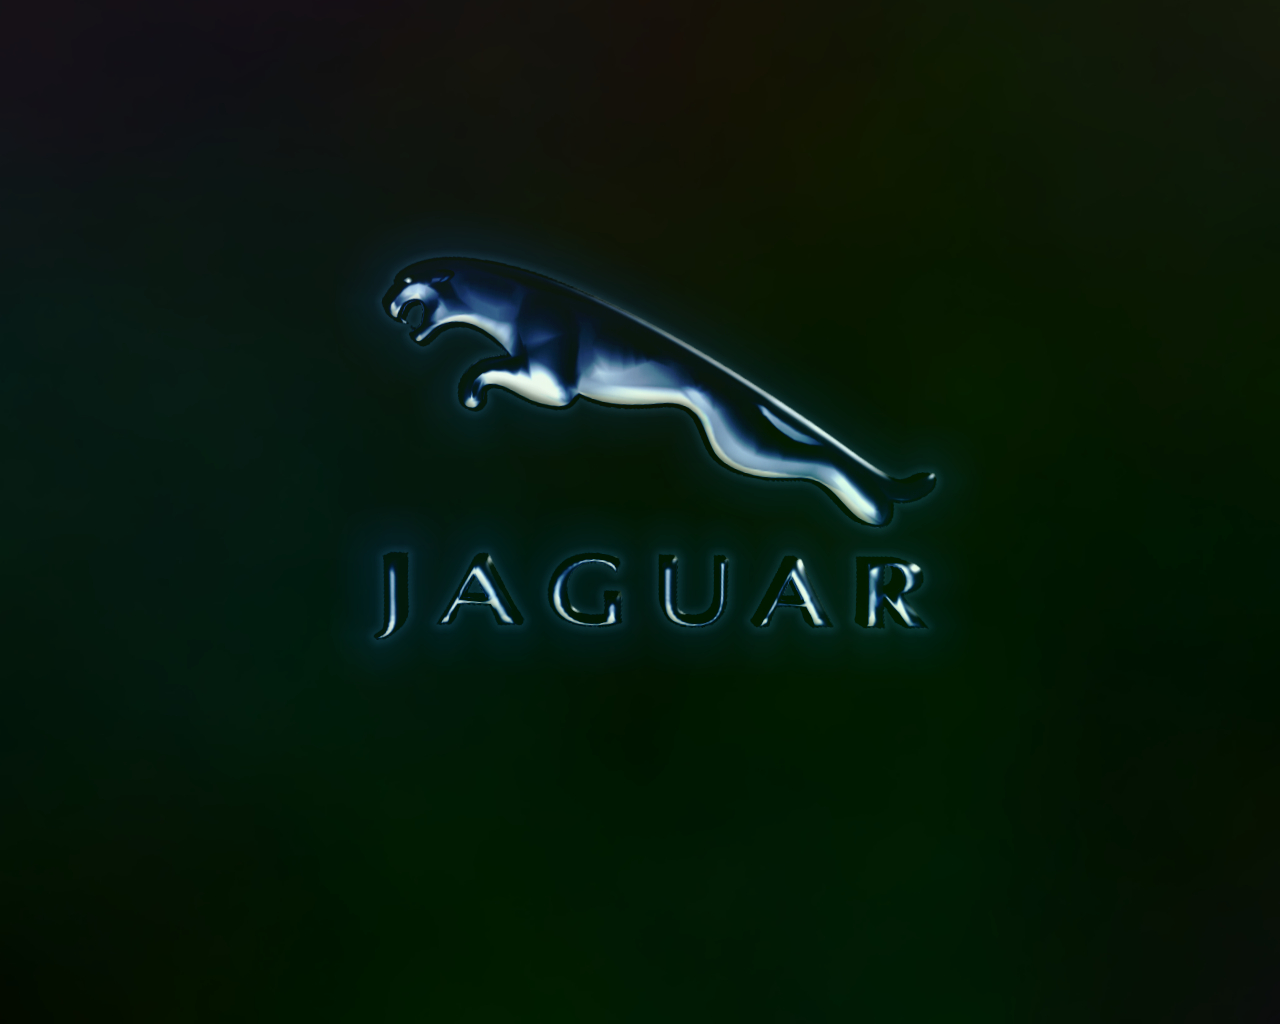 Jaguar Car Logo 4k Wallpaper Download